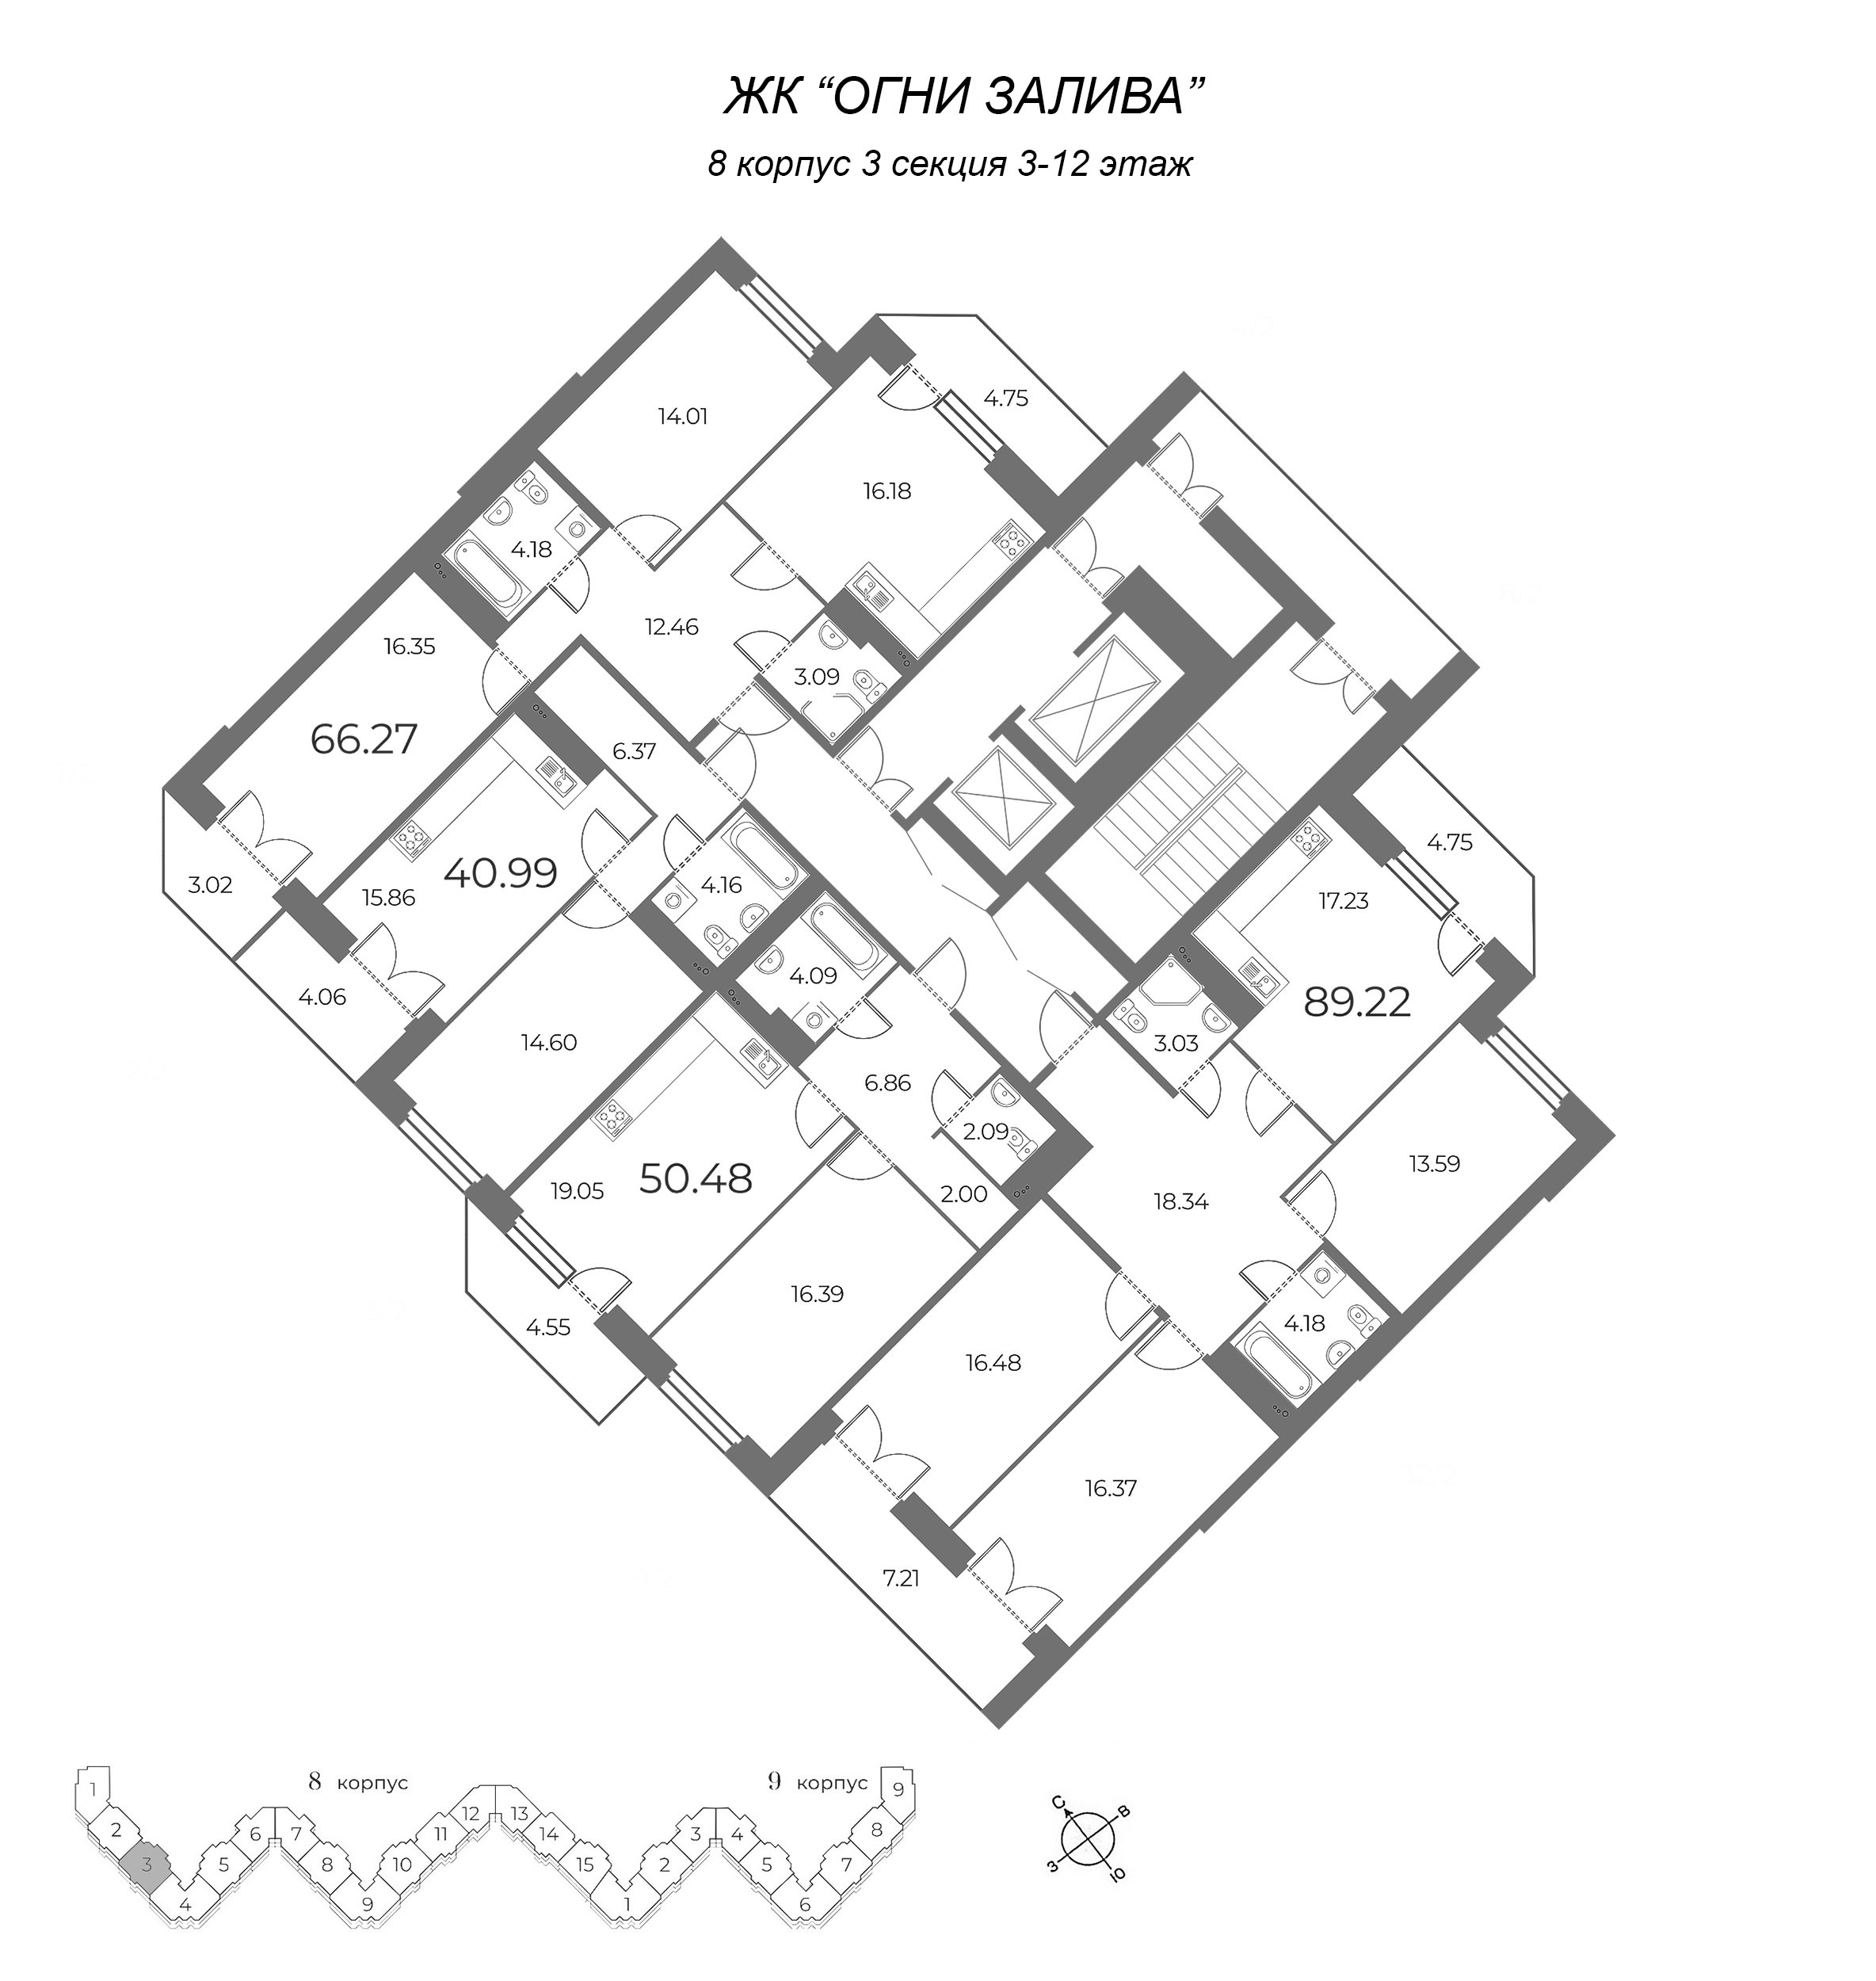 2-комнатная (Евро) квартира, 51.84 м² в ЖК "Огни Залива" - планировка этажа